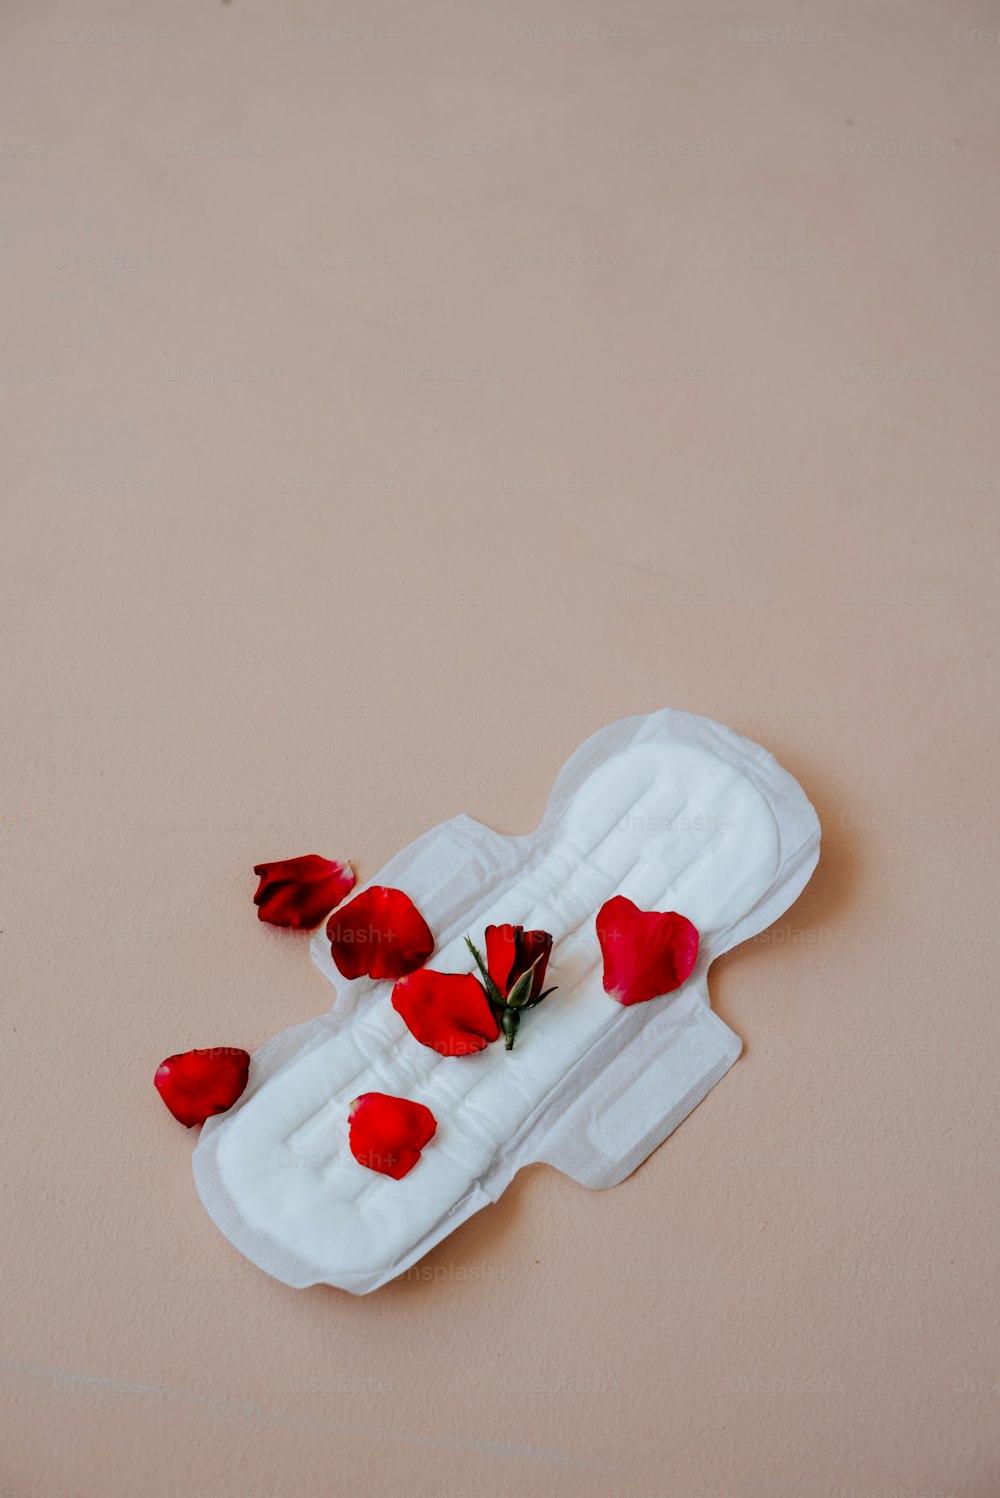 un oggetto bianco con fiori rossi su di esso